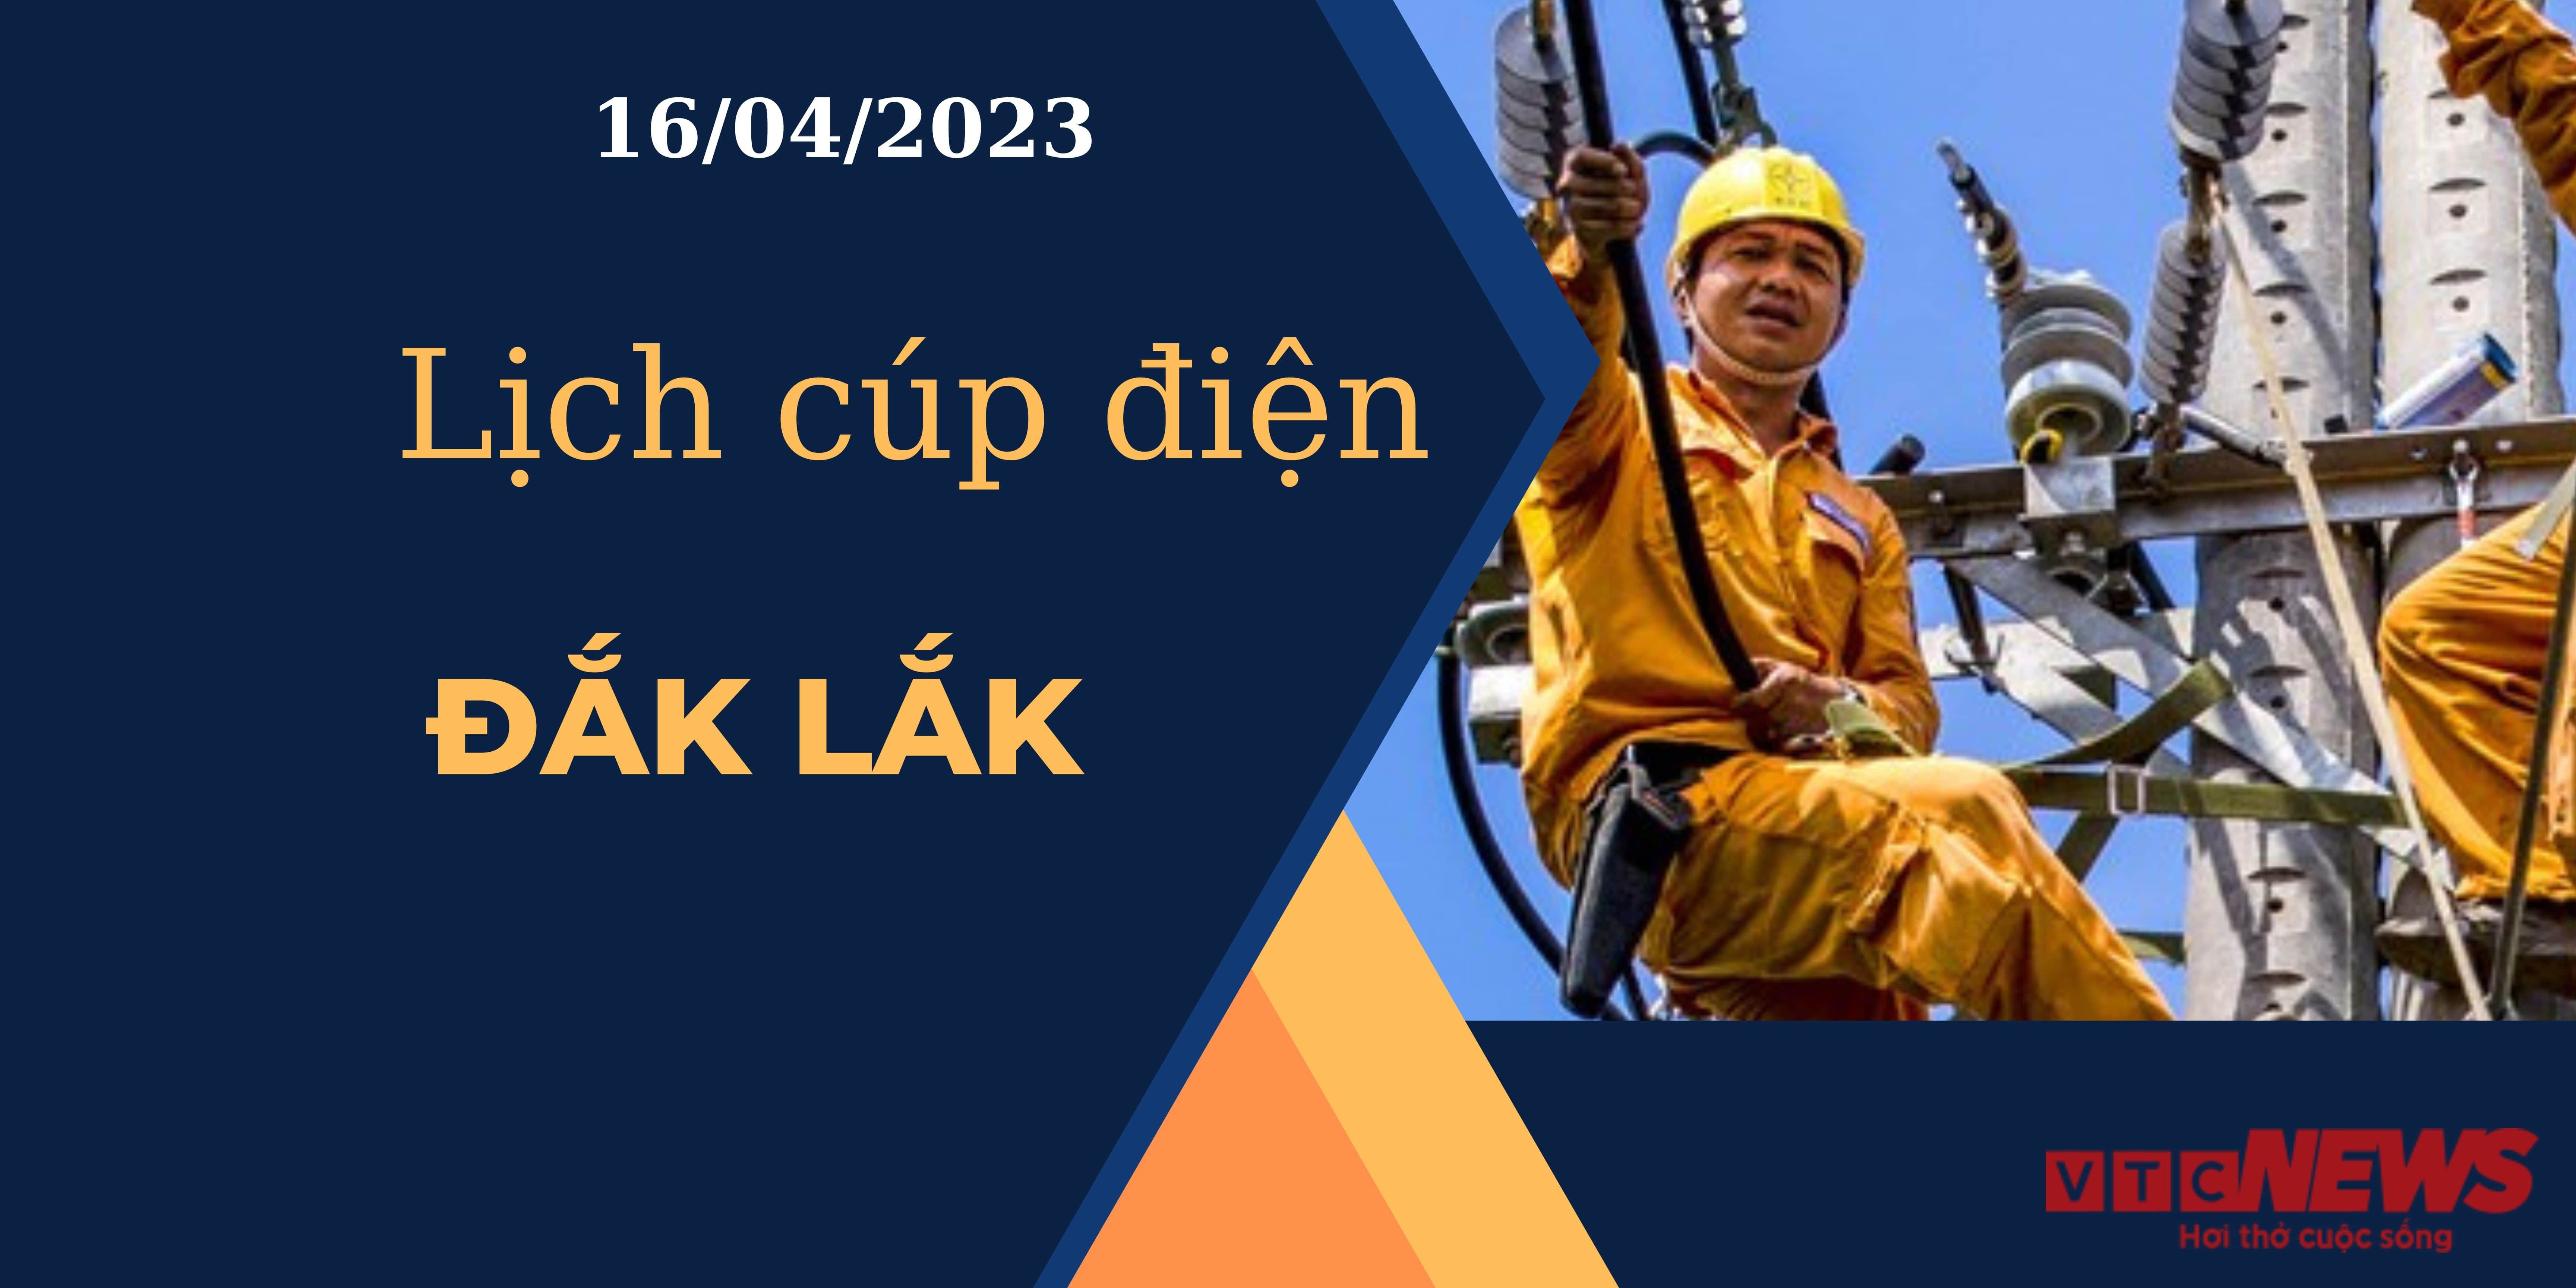 Lịch cúp điện hôm nay ngày 16/04/2023 tại Đắk Lắk - 1